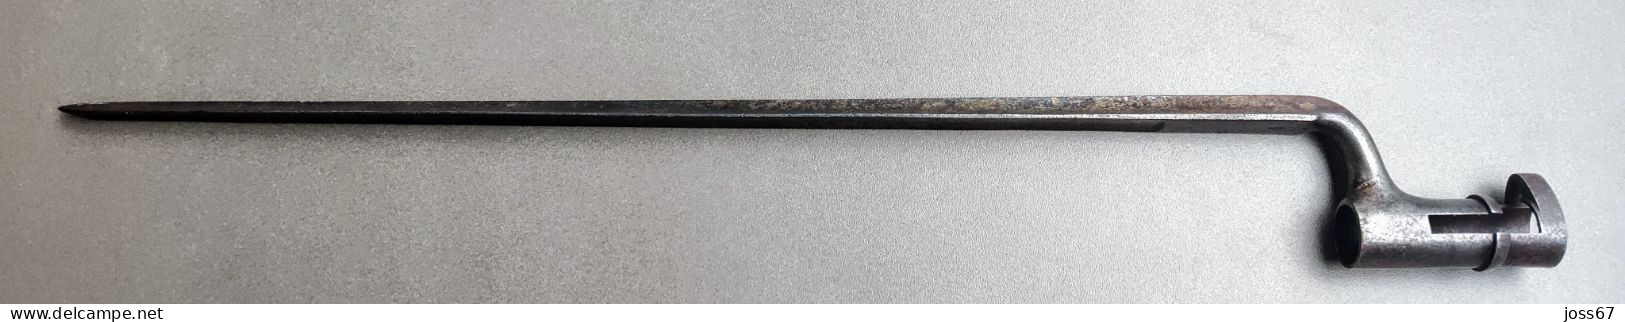 Baïonnette 1841 Dreyse - Armas Blancas